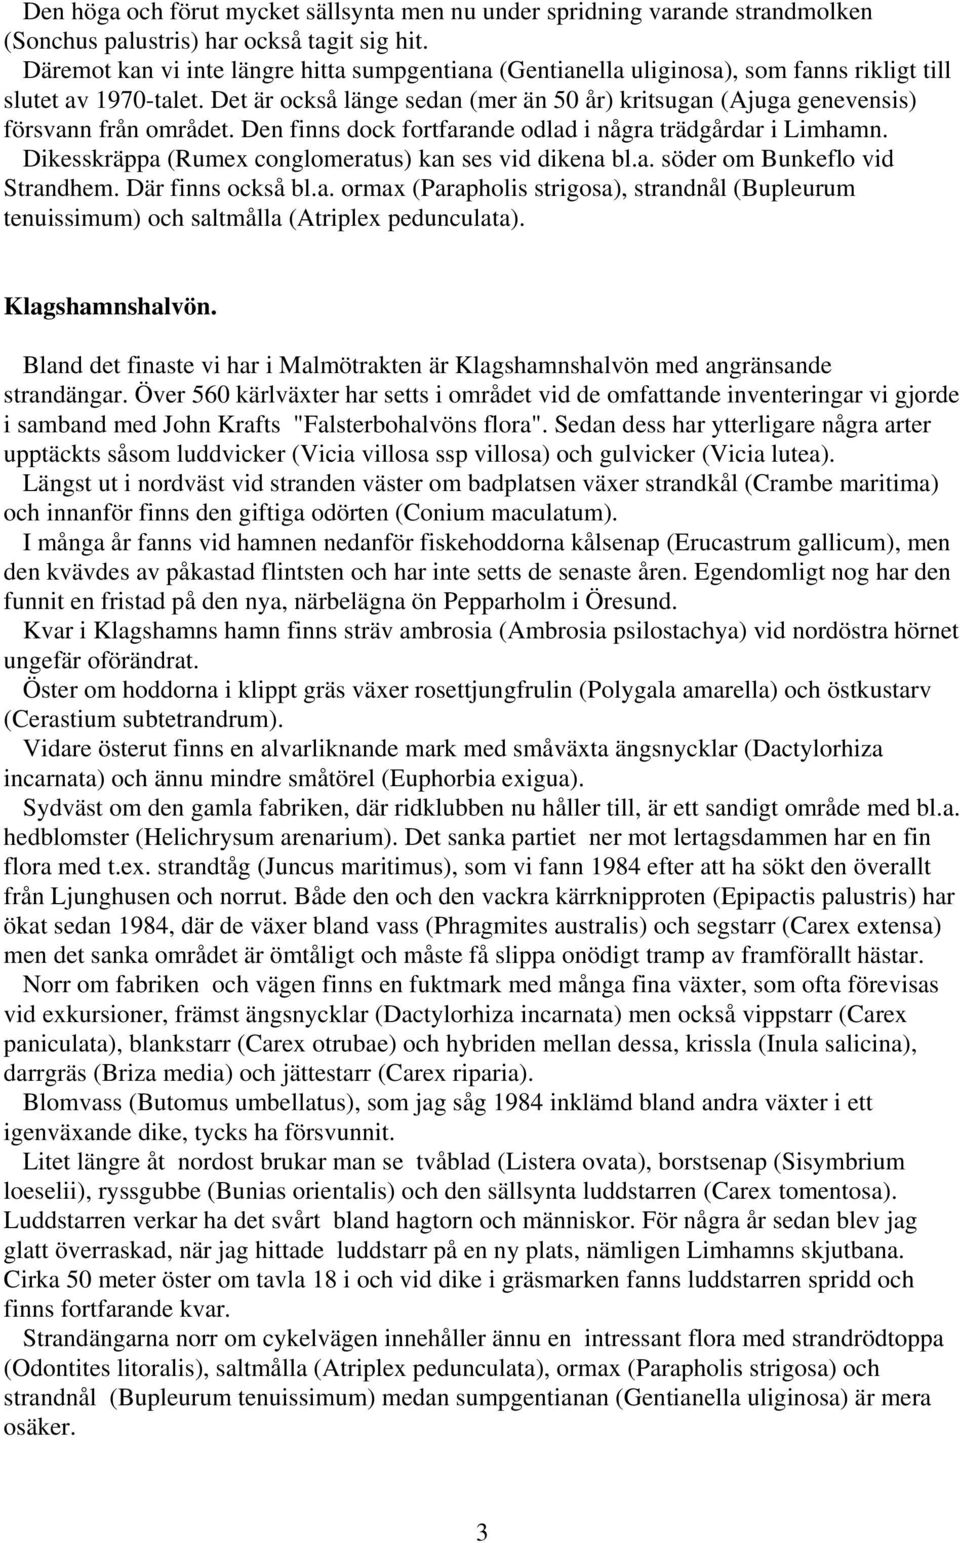 Det är också länge sedan (mer än 50 år) kritsugan (Ajuga genevensis) försvann från området. Den finns dock fortfarande odlad i några trädgårdar i Limhamn.